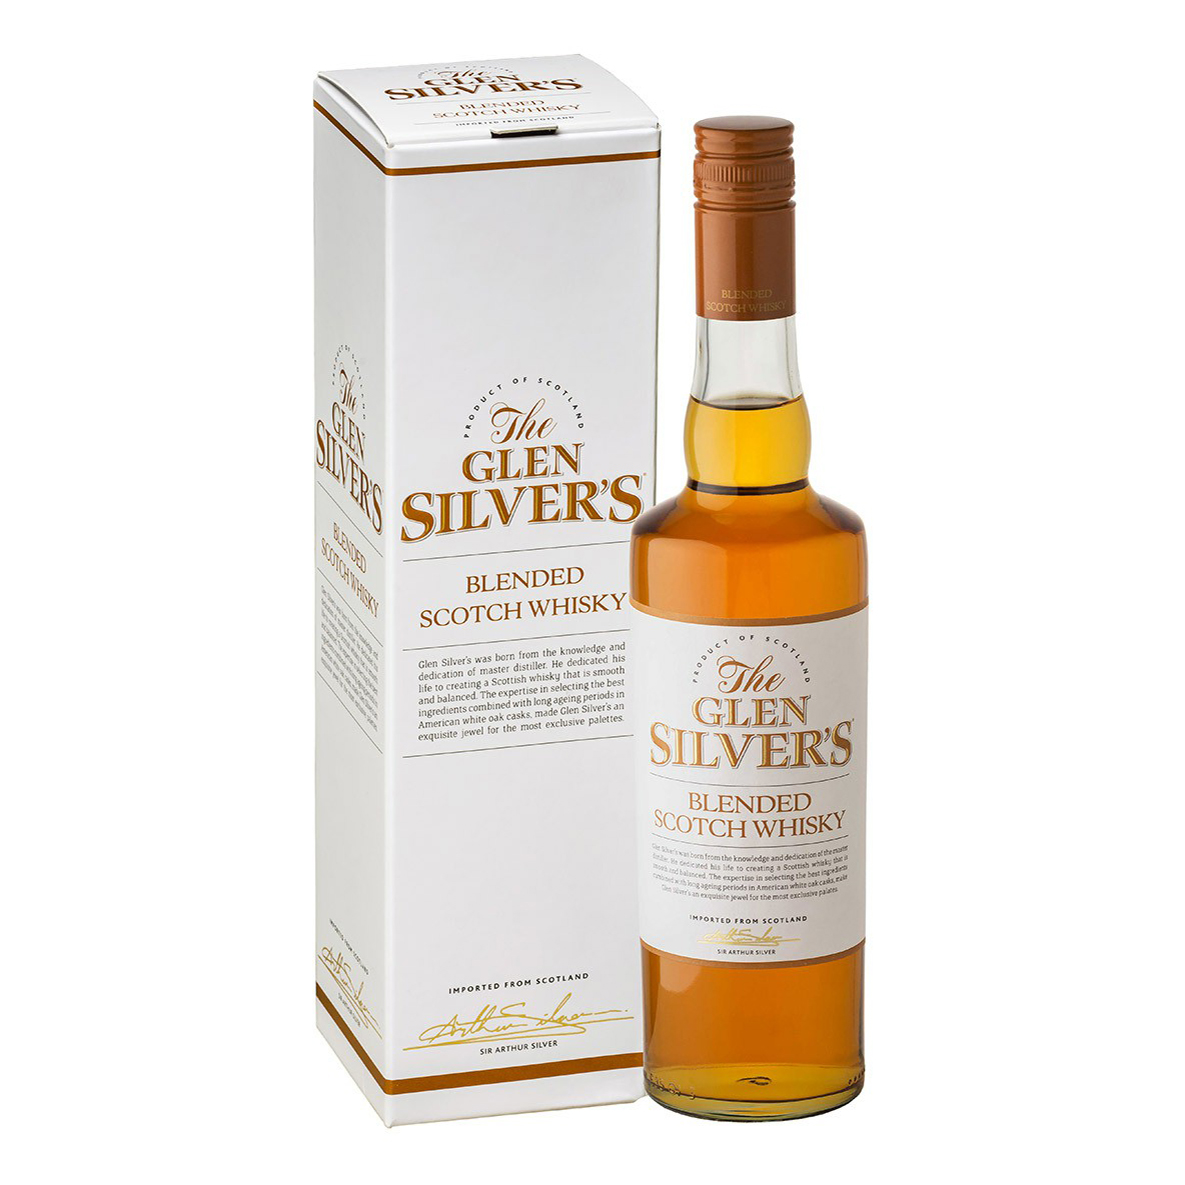 Scotch whisky цена 0.7. Glen Silvers виски Blended Malt Scotch Whisky. Виски Glen Silver's Blended. Глен Сильвер 8 лет виски. Виски Glen Silver's Blended Malt Scotch 0.7.